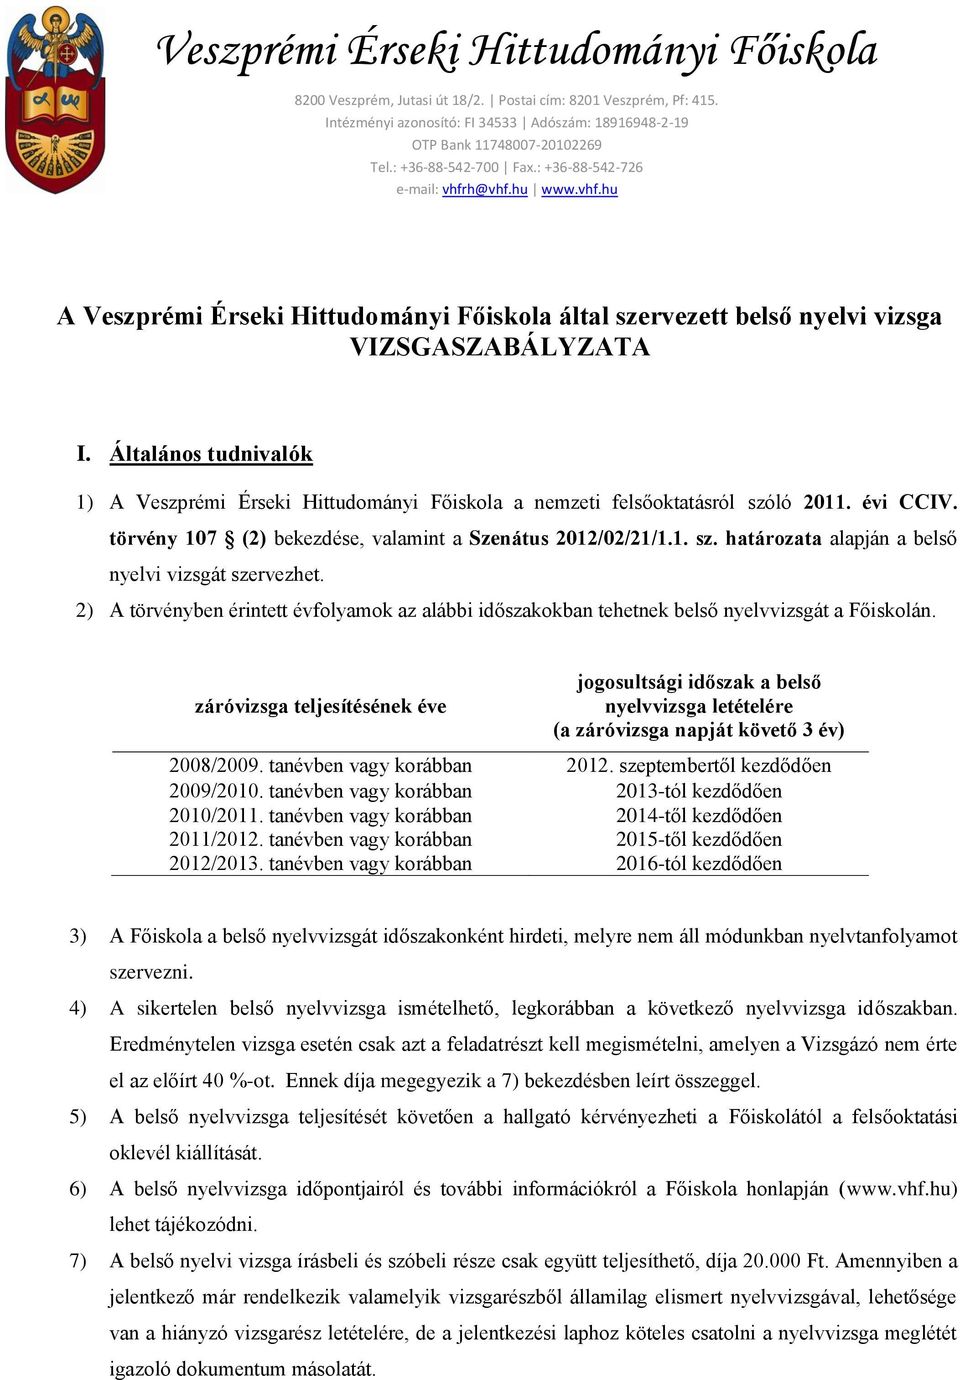 Általános tudnivalók 1) A Veszprémi Érseki Hittudományi Főiskola a nemzeti felsőoktatásról szóló 2011. évi CCIV. törvény 107 (2) bekezdése, valamint a Szenátus 2012/02/21/1.1. sz. határozata alapján a belső nyelvi vizsgát szervezhet.